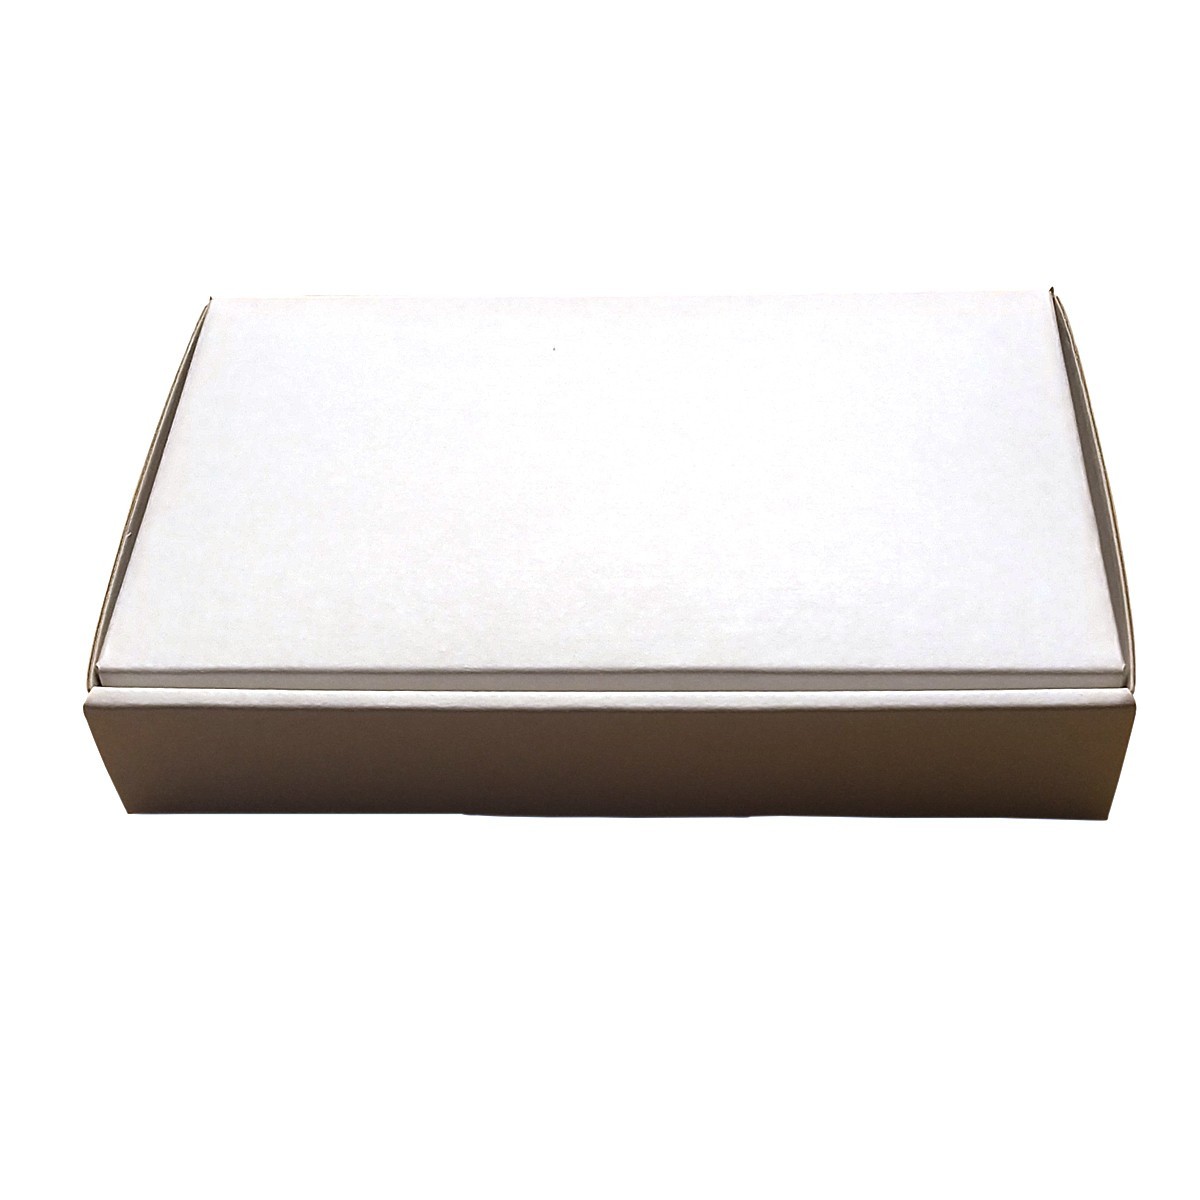  новый товар не использовался двусторонний белый 30 листов маленький размер картон коробка .. пачка нестандартная пересылка ( стандарт внутри )